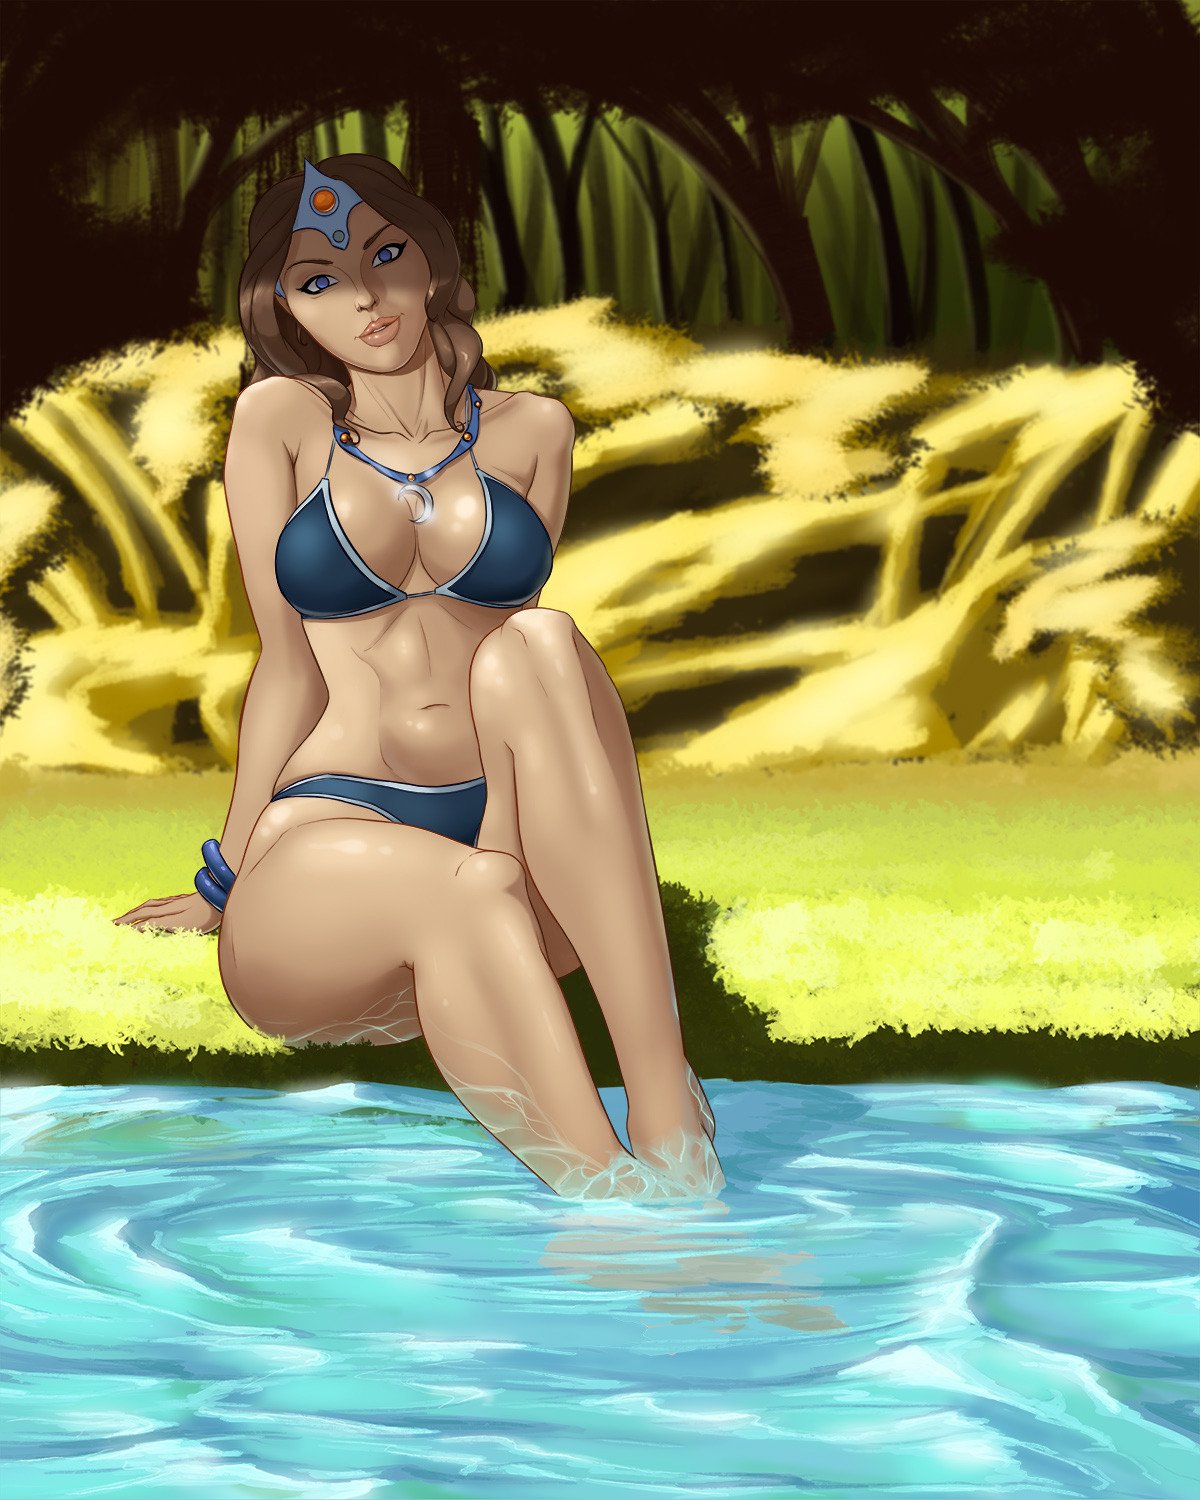 Mirana on the riverbank in her bikini [kataAoyoc]